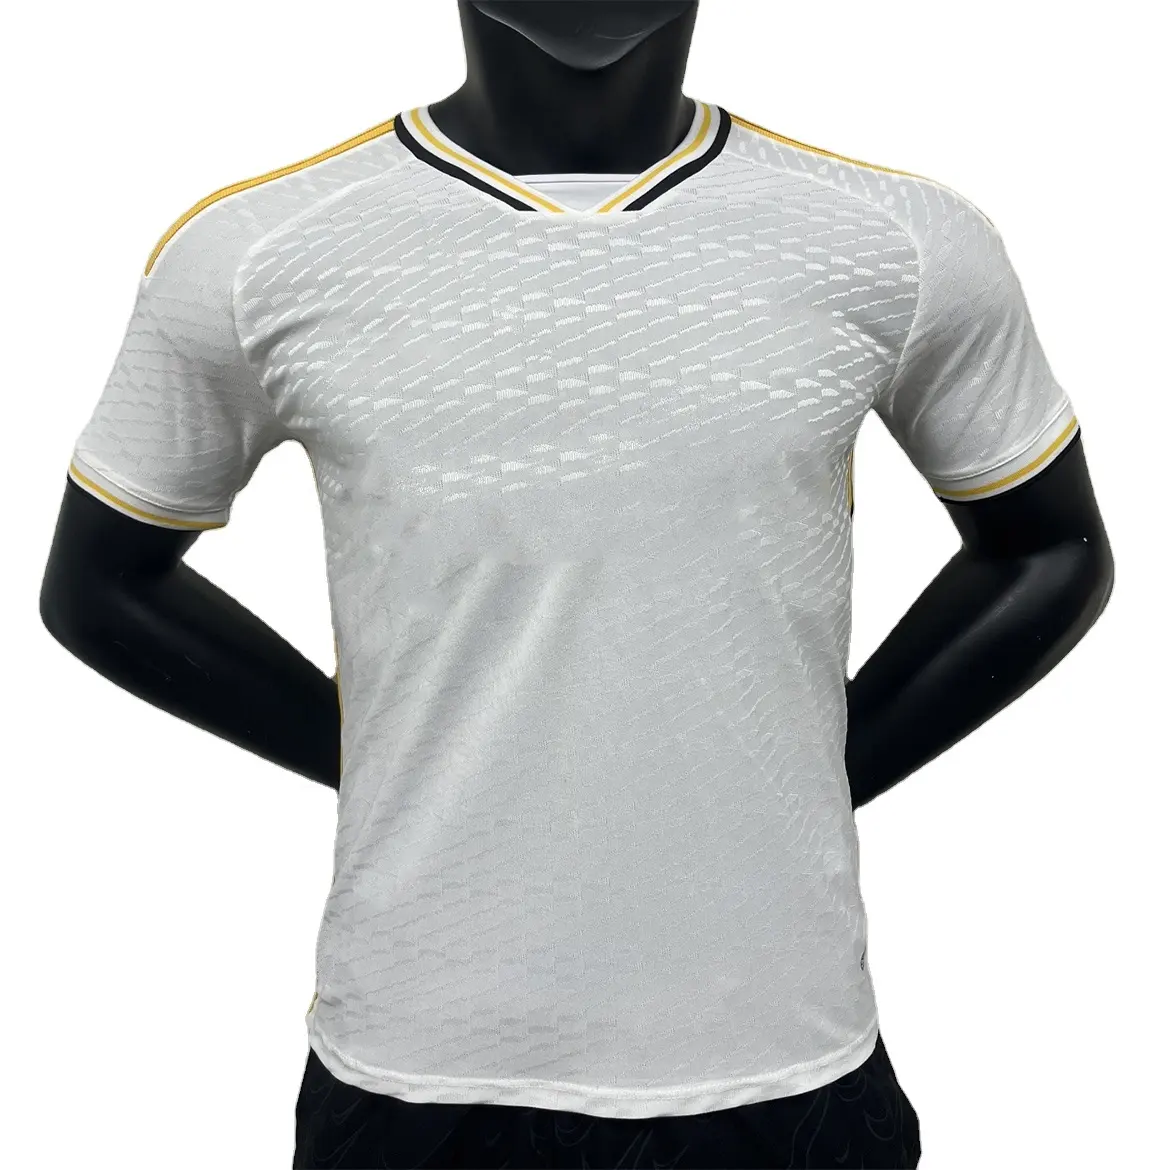 Grosir kaus sepak bola berkualitas tinggi kaus sepak bola versi pendek jersey sepak bola pria terbaru logo khusus yang Anda inginkan